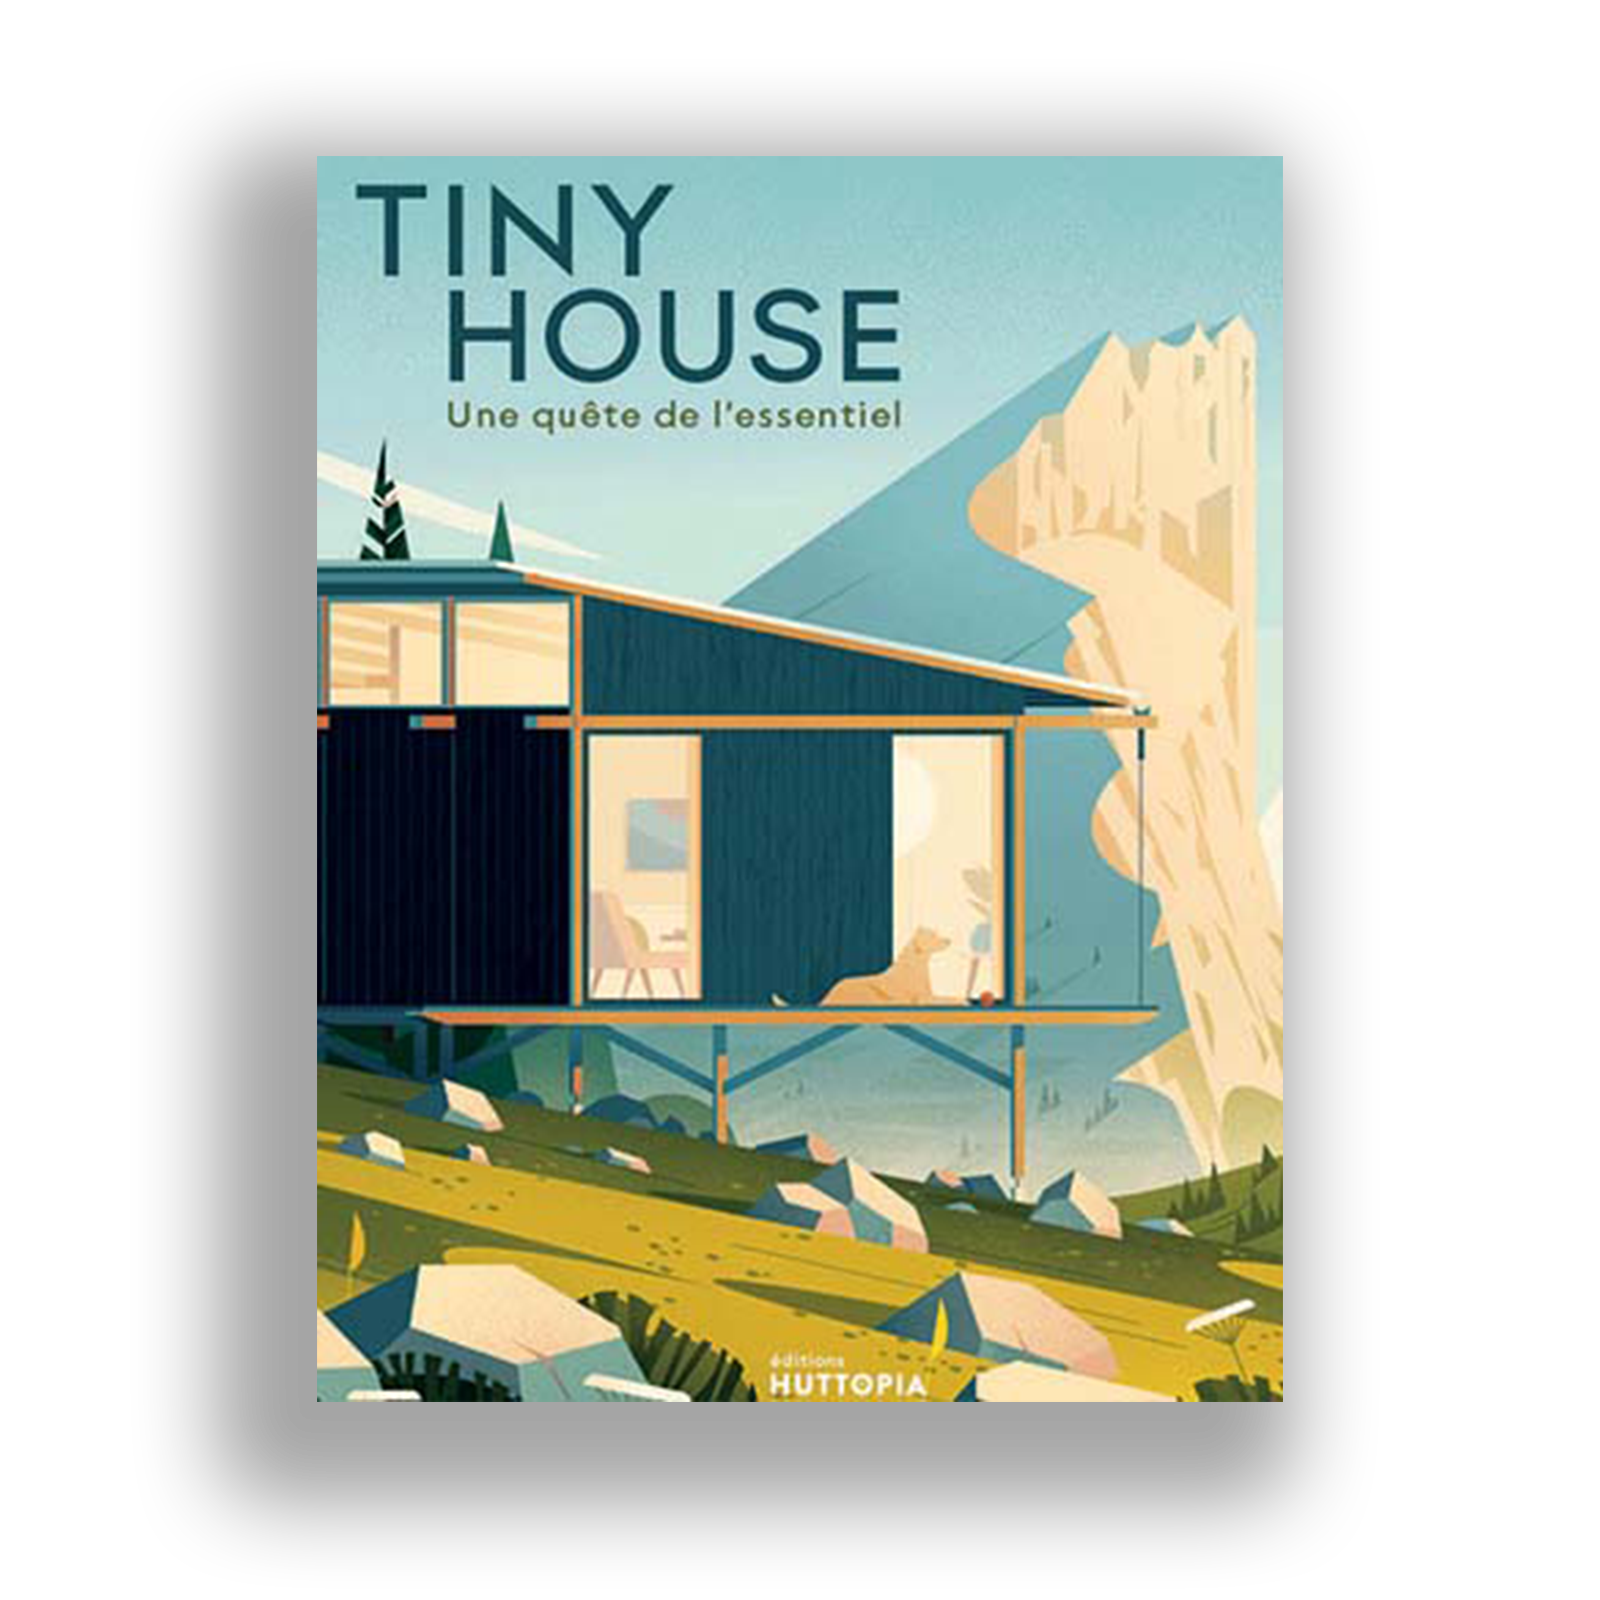 Tiny House, une quête de l'essentiel